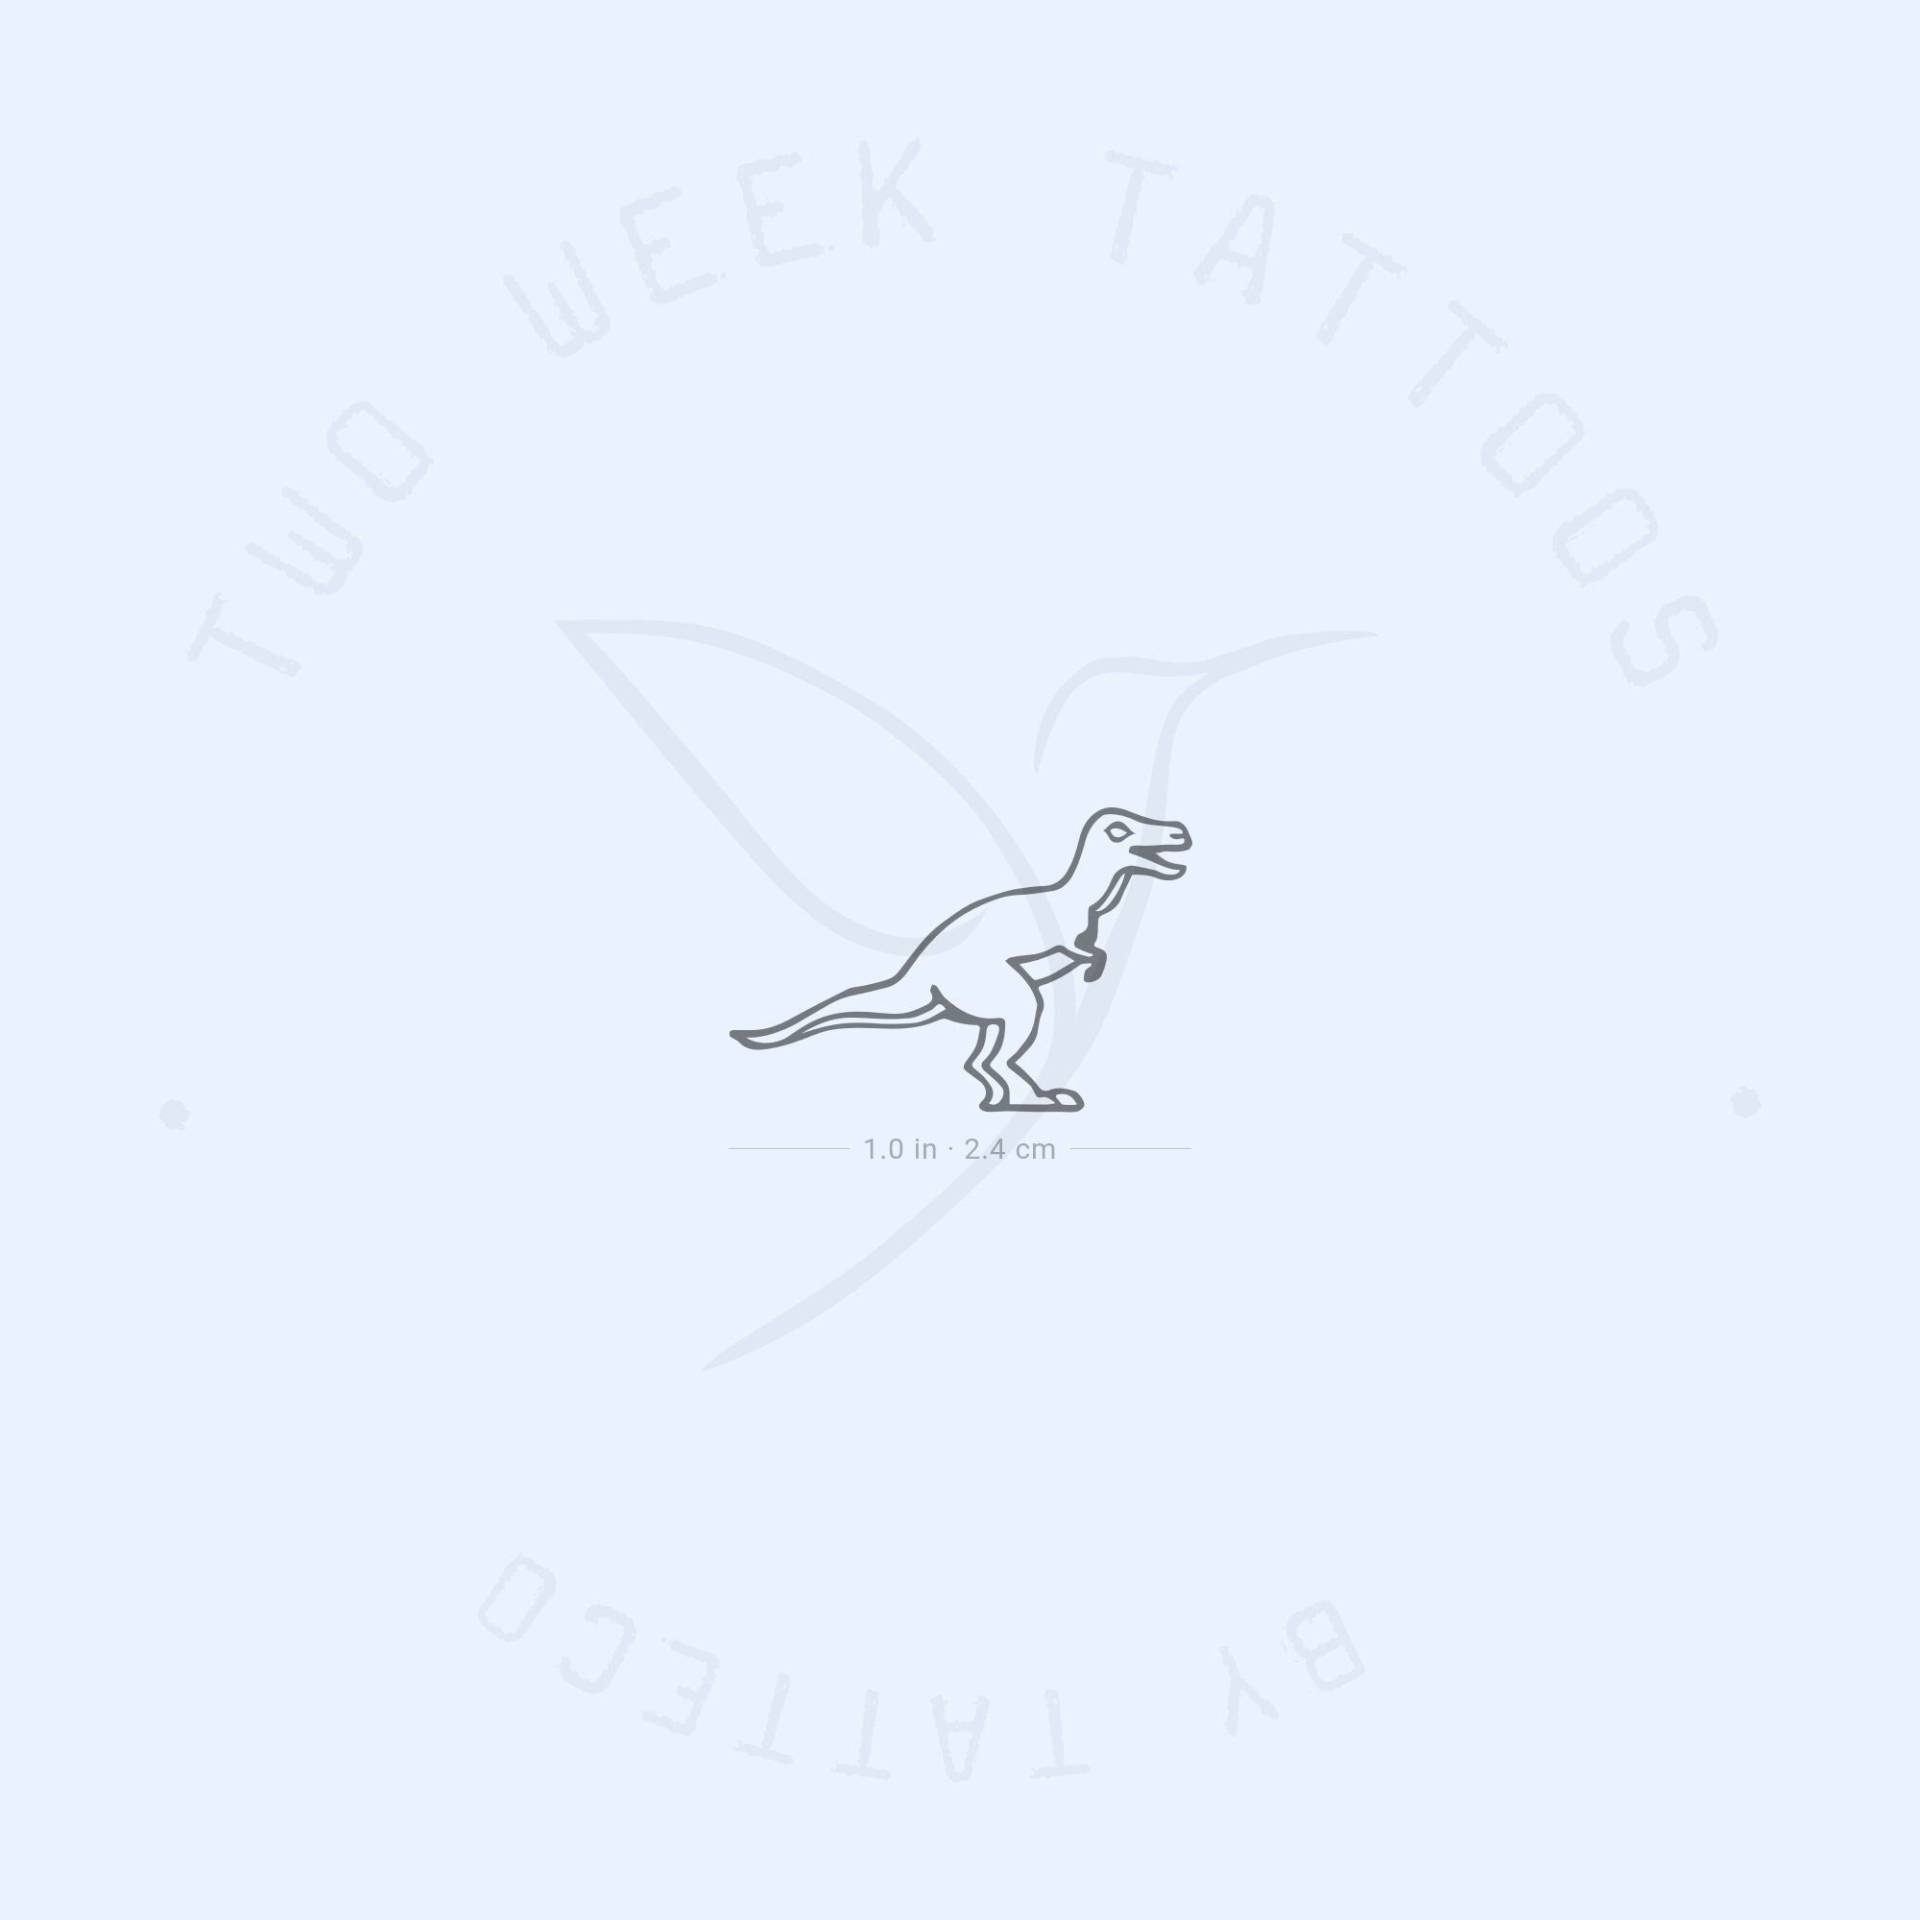 Kleiner T-Rex Dinosaurier Semi-Permanent 2-Wochen Tattoo | 2Er Set von Etsy - twoweektattoos